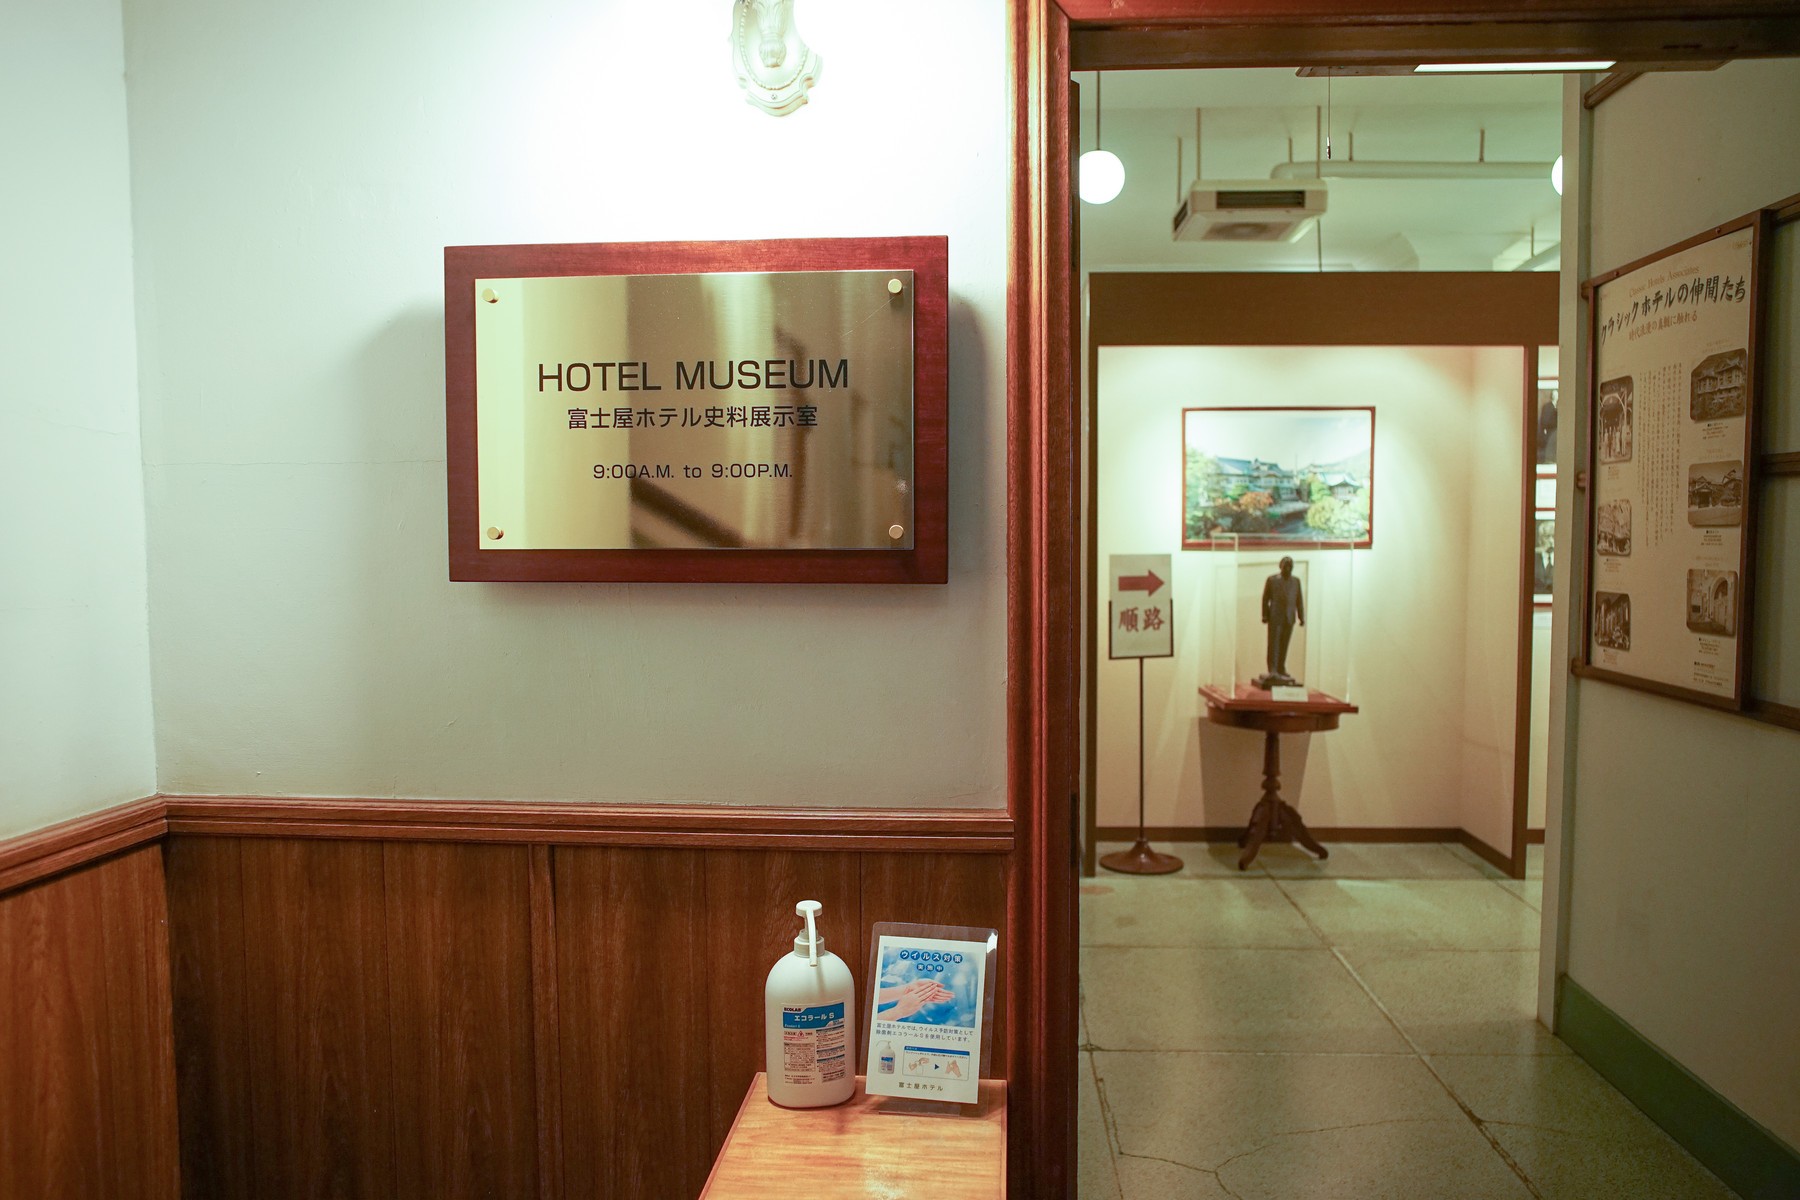 神奈川県箱根「富士屋ホテル」の魅力に迫る！世界の要人をも魅了する老舗ホテルの凄さ